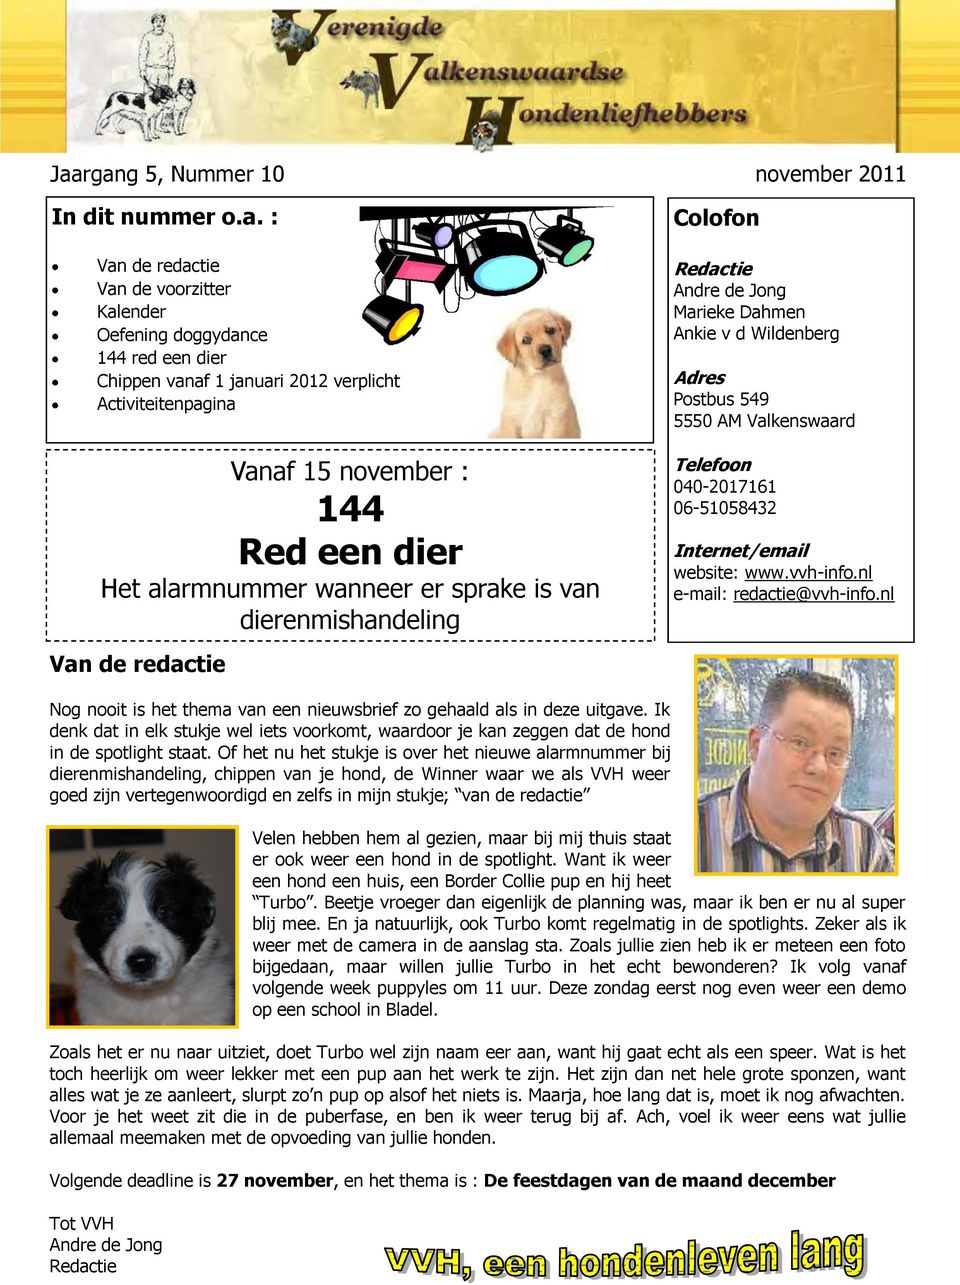 5550 AM Valkenswaard Telefoon 040-2017161 06-51058432 Internet/email website: www.vvh-info.nl e-mail: redactie@vvh-info.nl Nog nooit is het thema van een nieuwsbrief zo gehaald als in deze uitgave.